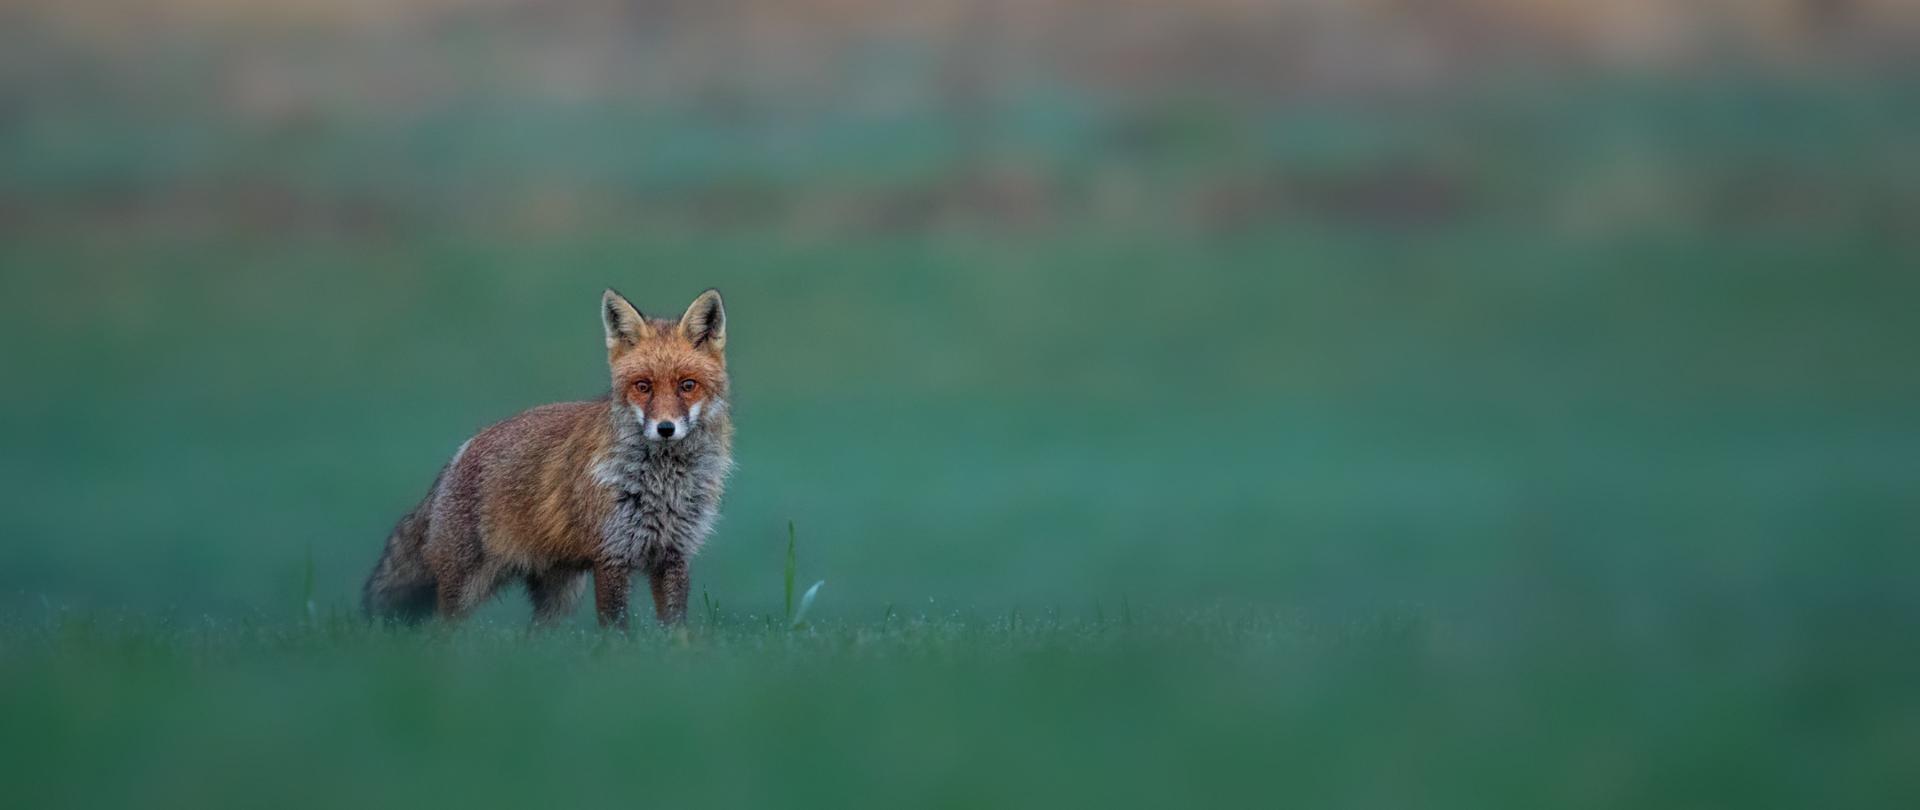 Zdjęcie przedstawia rudego lisa stojącego w trawie. Zwierzę patrzy się w stronę obiektywu.